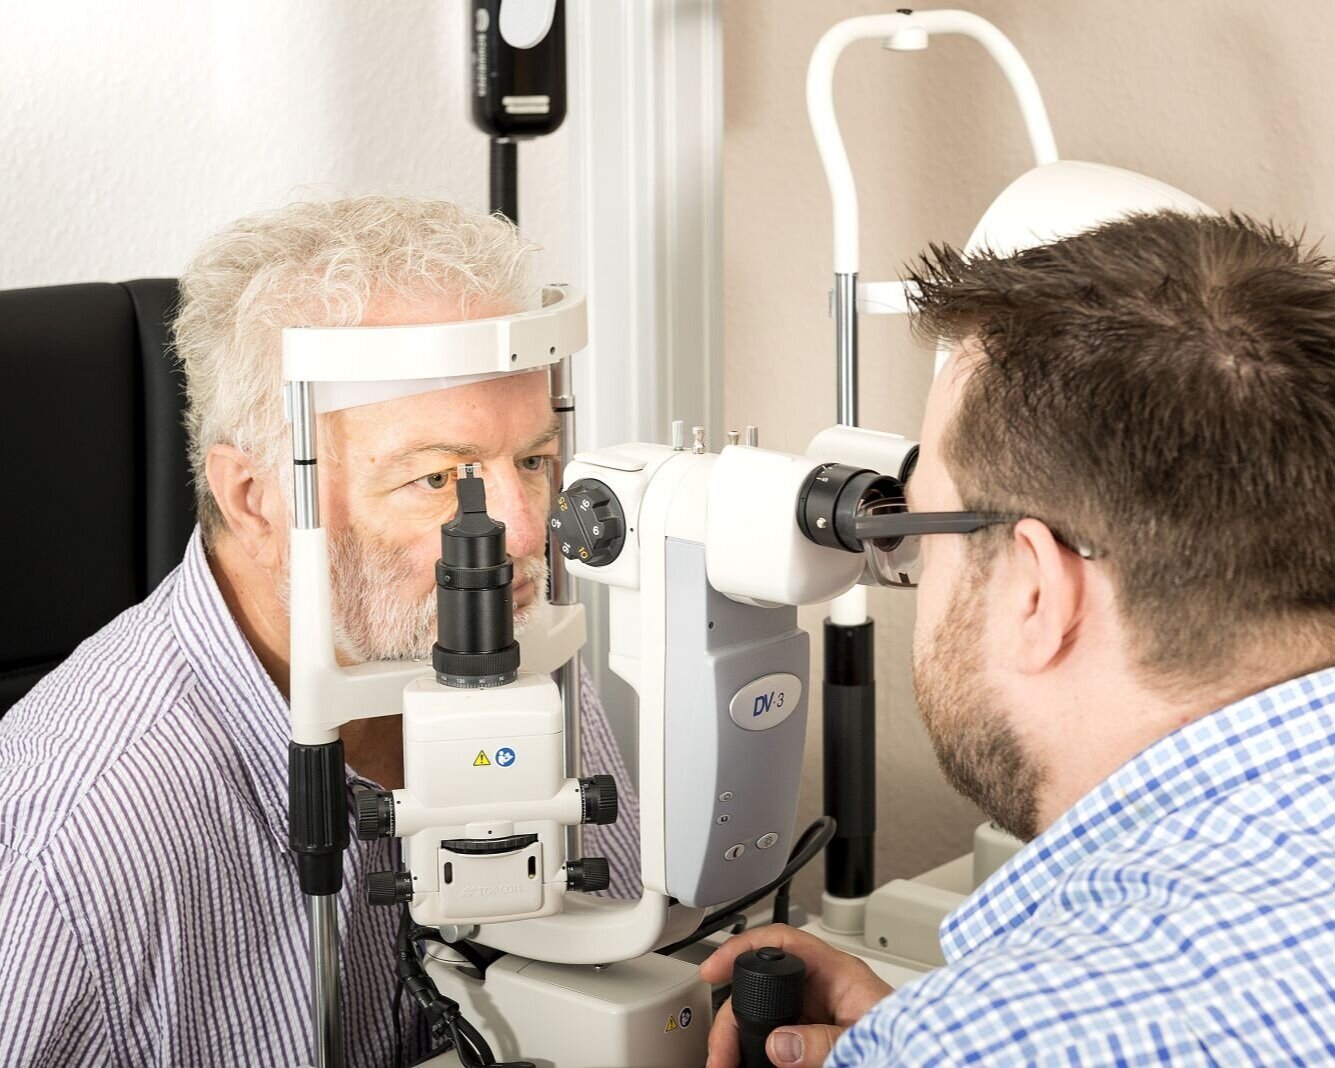 Ist Optiker ein medizinischer Beruf?